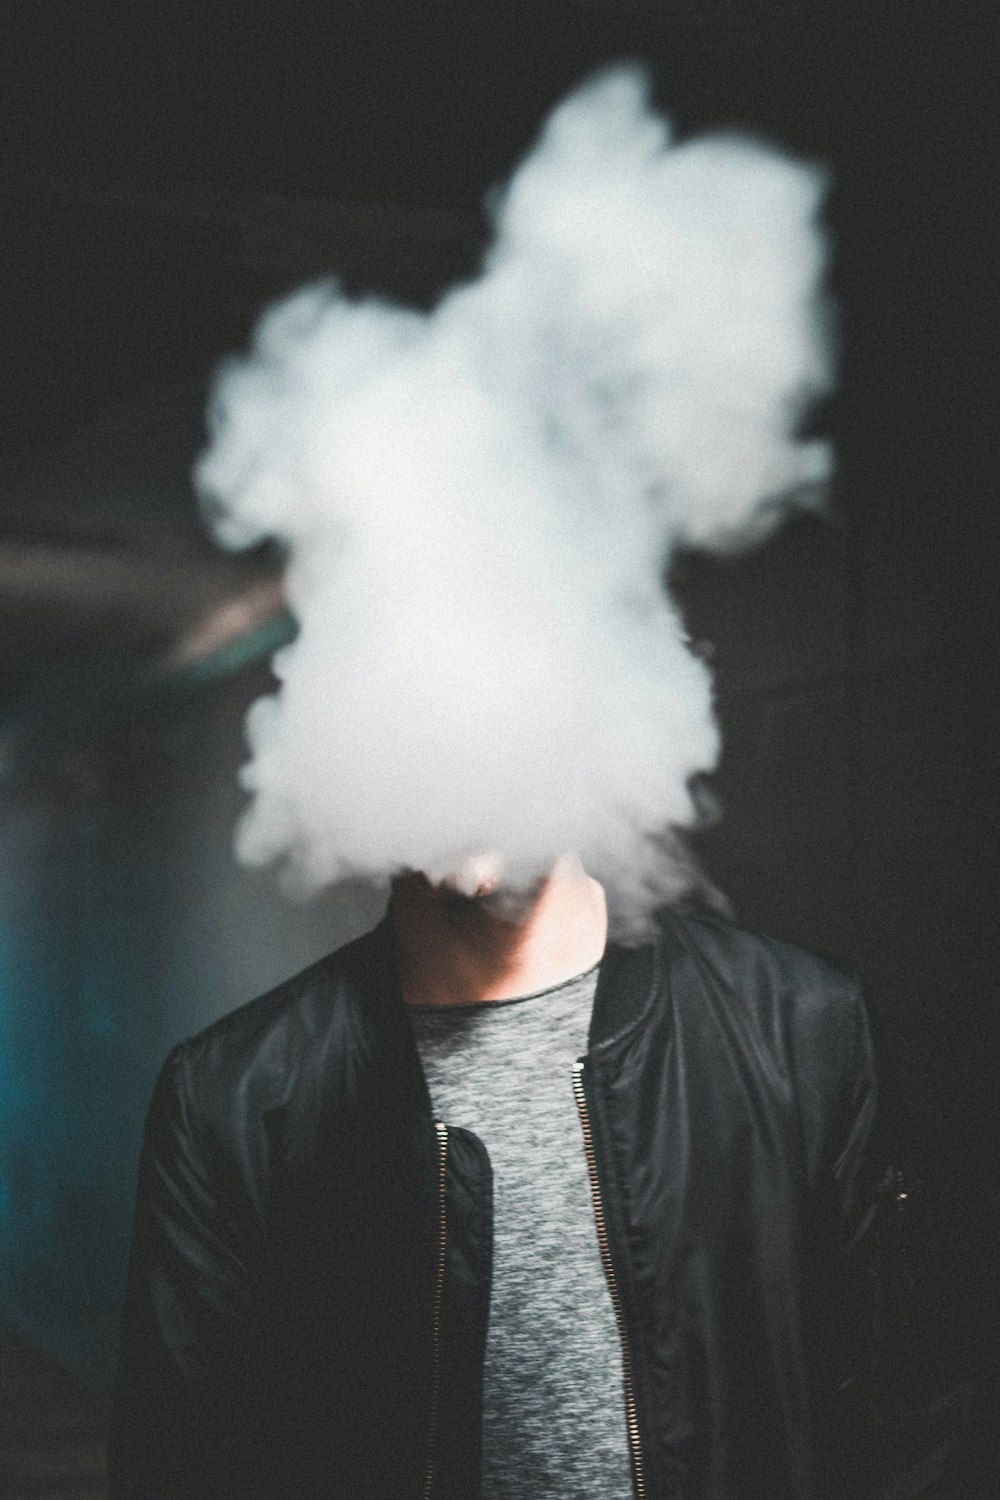 Mann trägt schwarze Lederjacke mit Reißverschluss, während er Rauch bläst